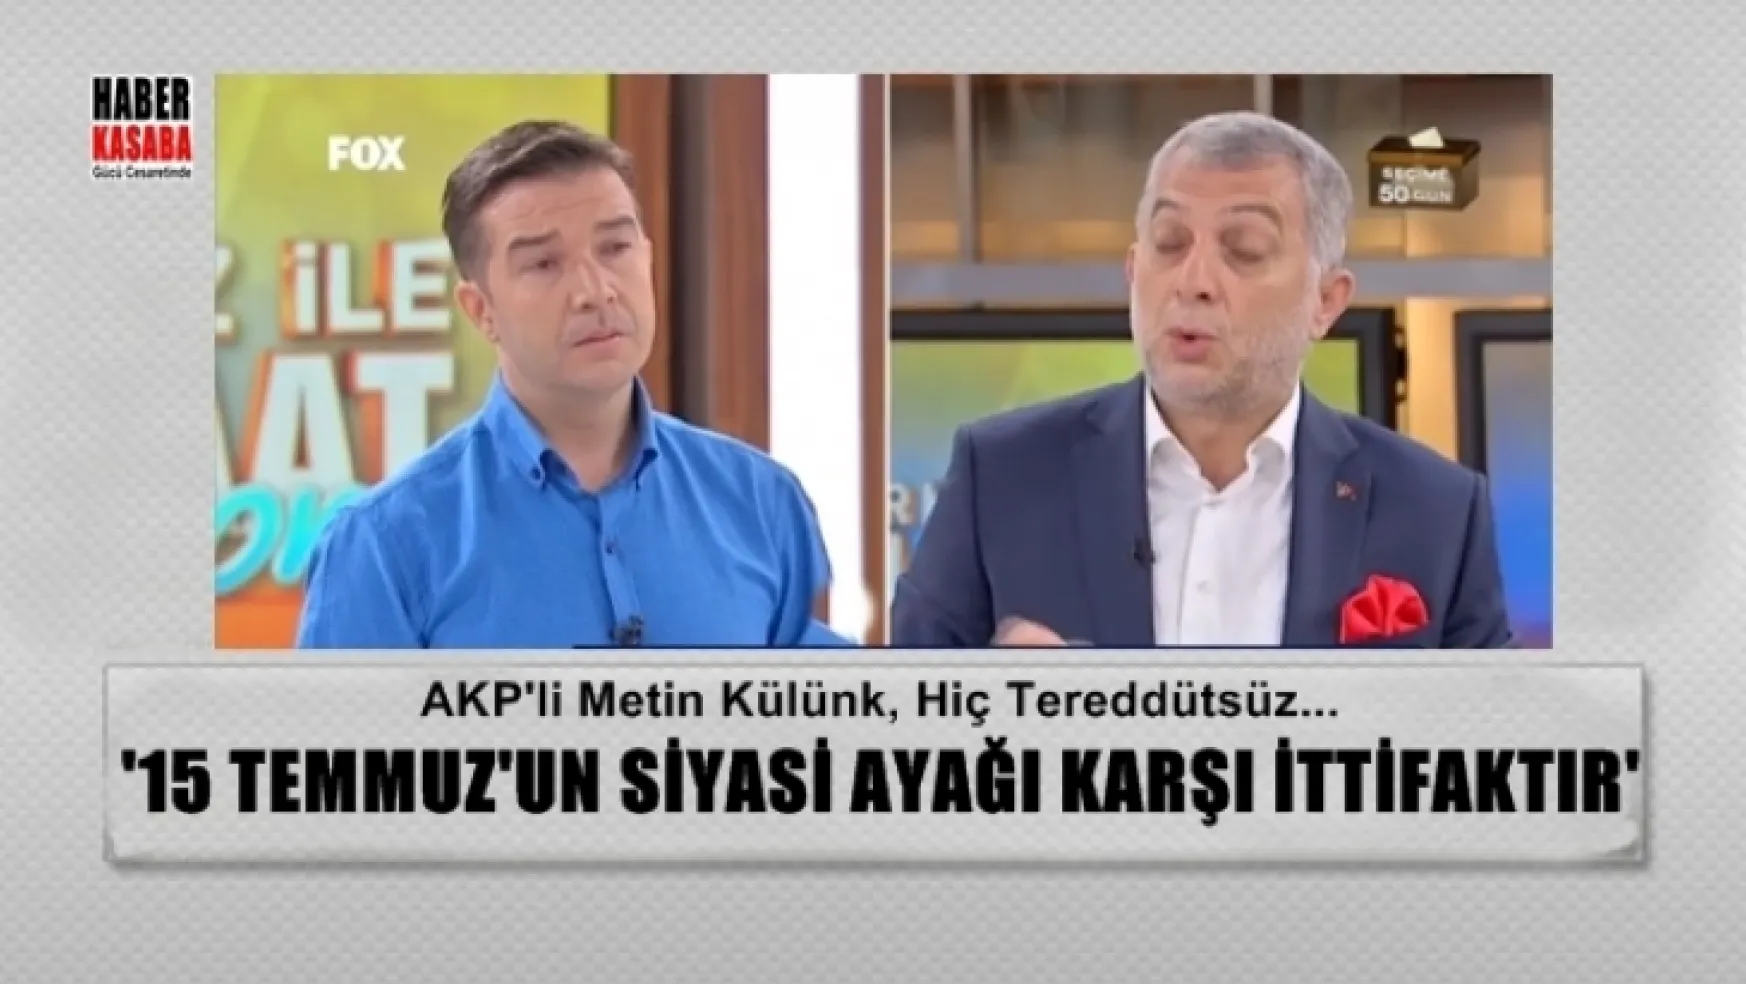 AKP'li Külünk,'15 Temmuz'un Siyasi Ayağı Karşı İttifaktır' hiç tereddütsüz'